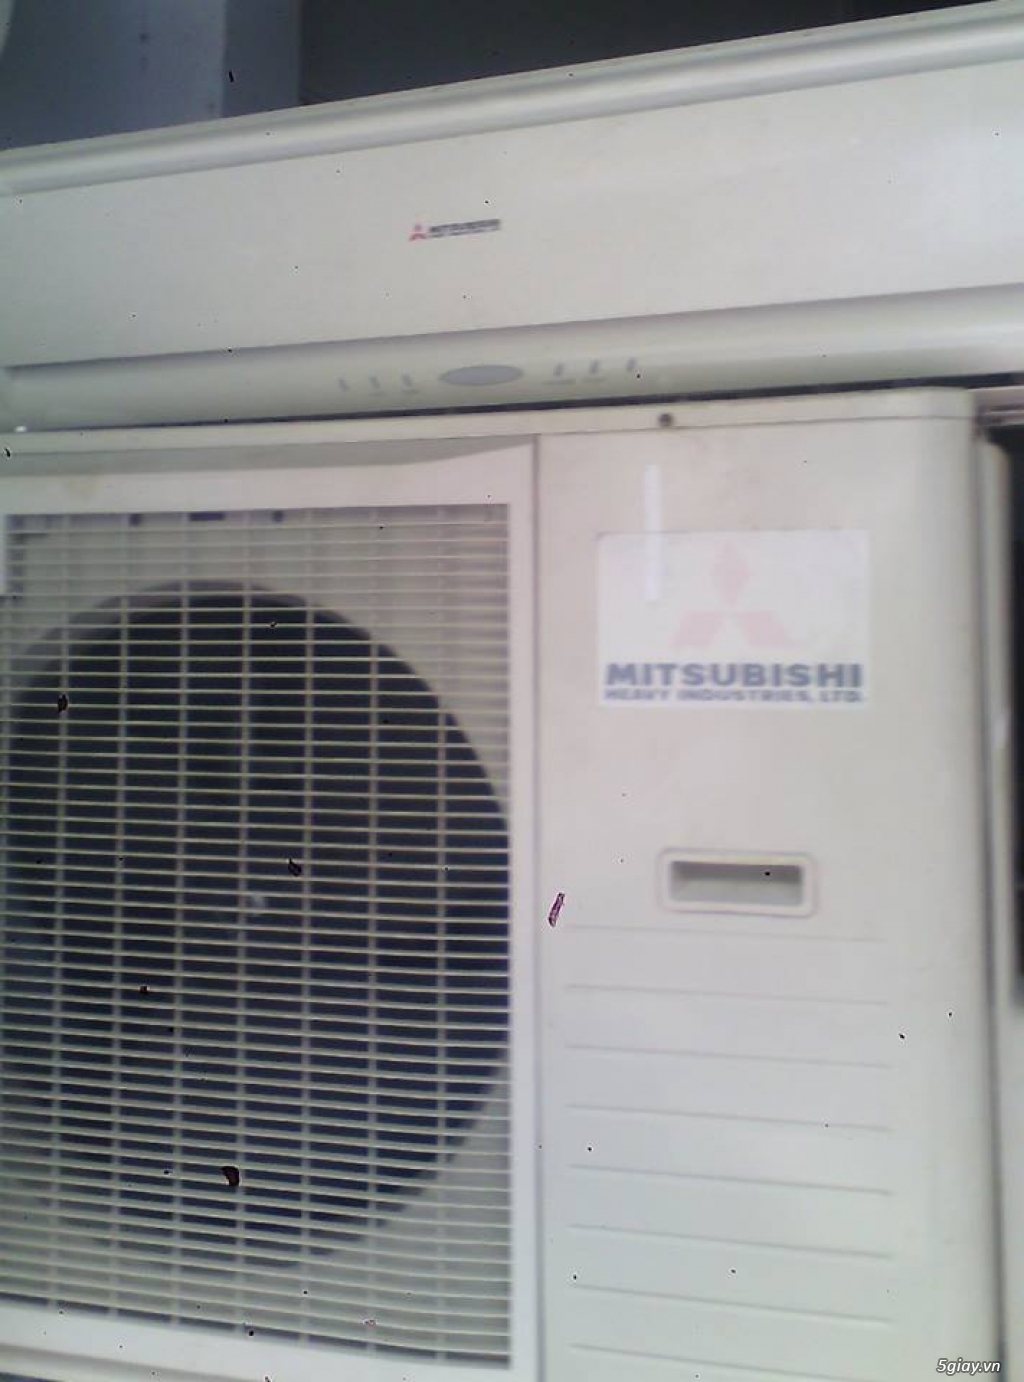 điện lạnh thiện nhân chuyên sửa chữa,lắp đặt,mua bán.maý lanh mitsubishi 2,5hp giá 8500000